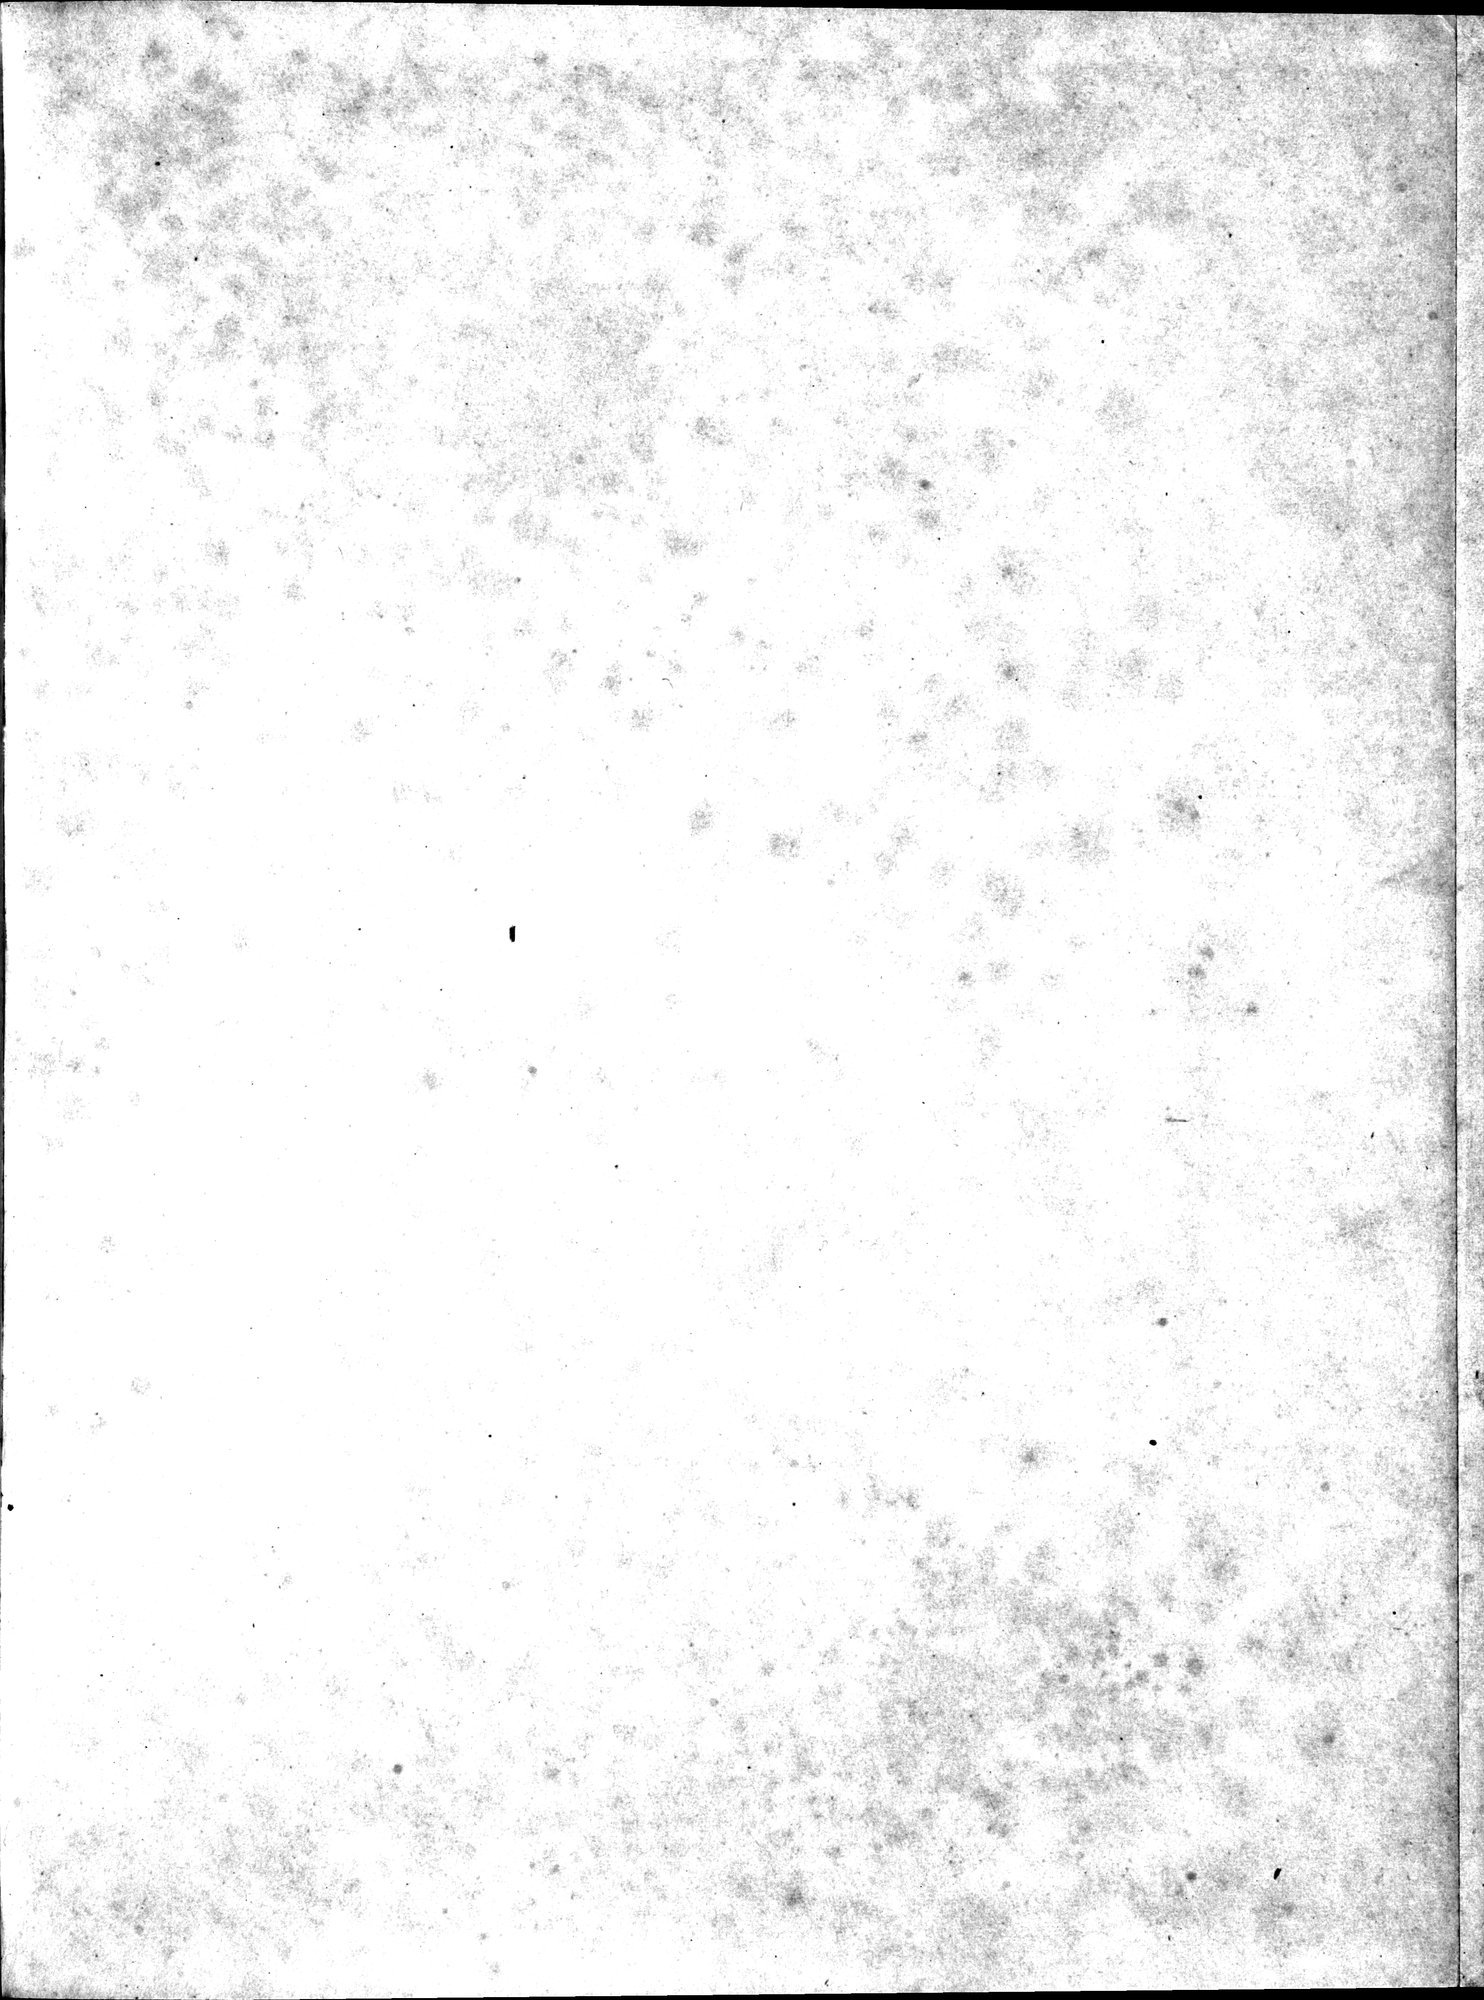 Bilderatlas zur Kunst und Kulturgeschichte Mittel-Asiens : vol.1 / Page 113 (Grayscale High Resolution Image)